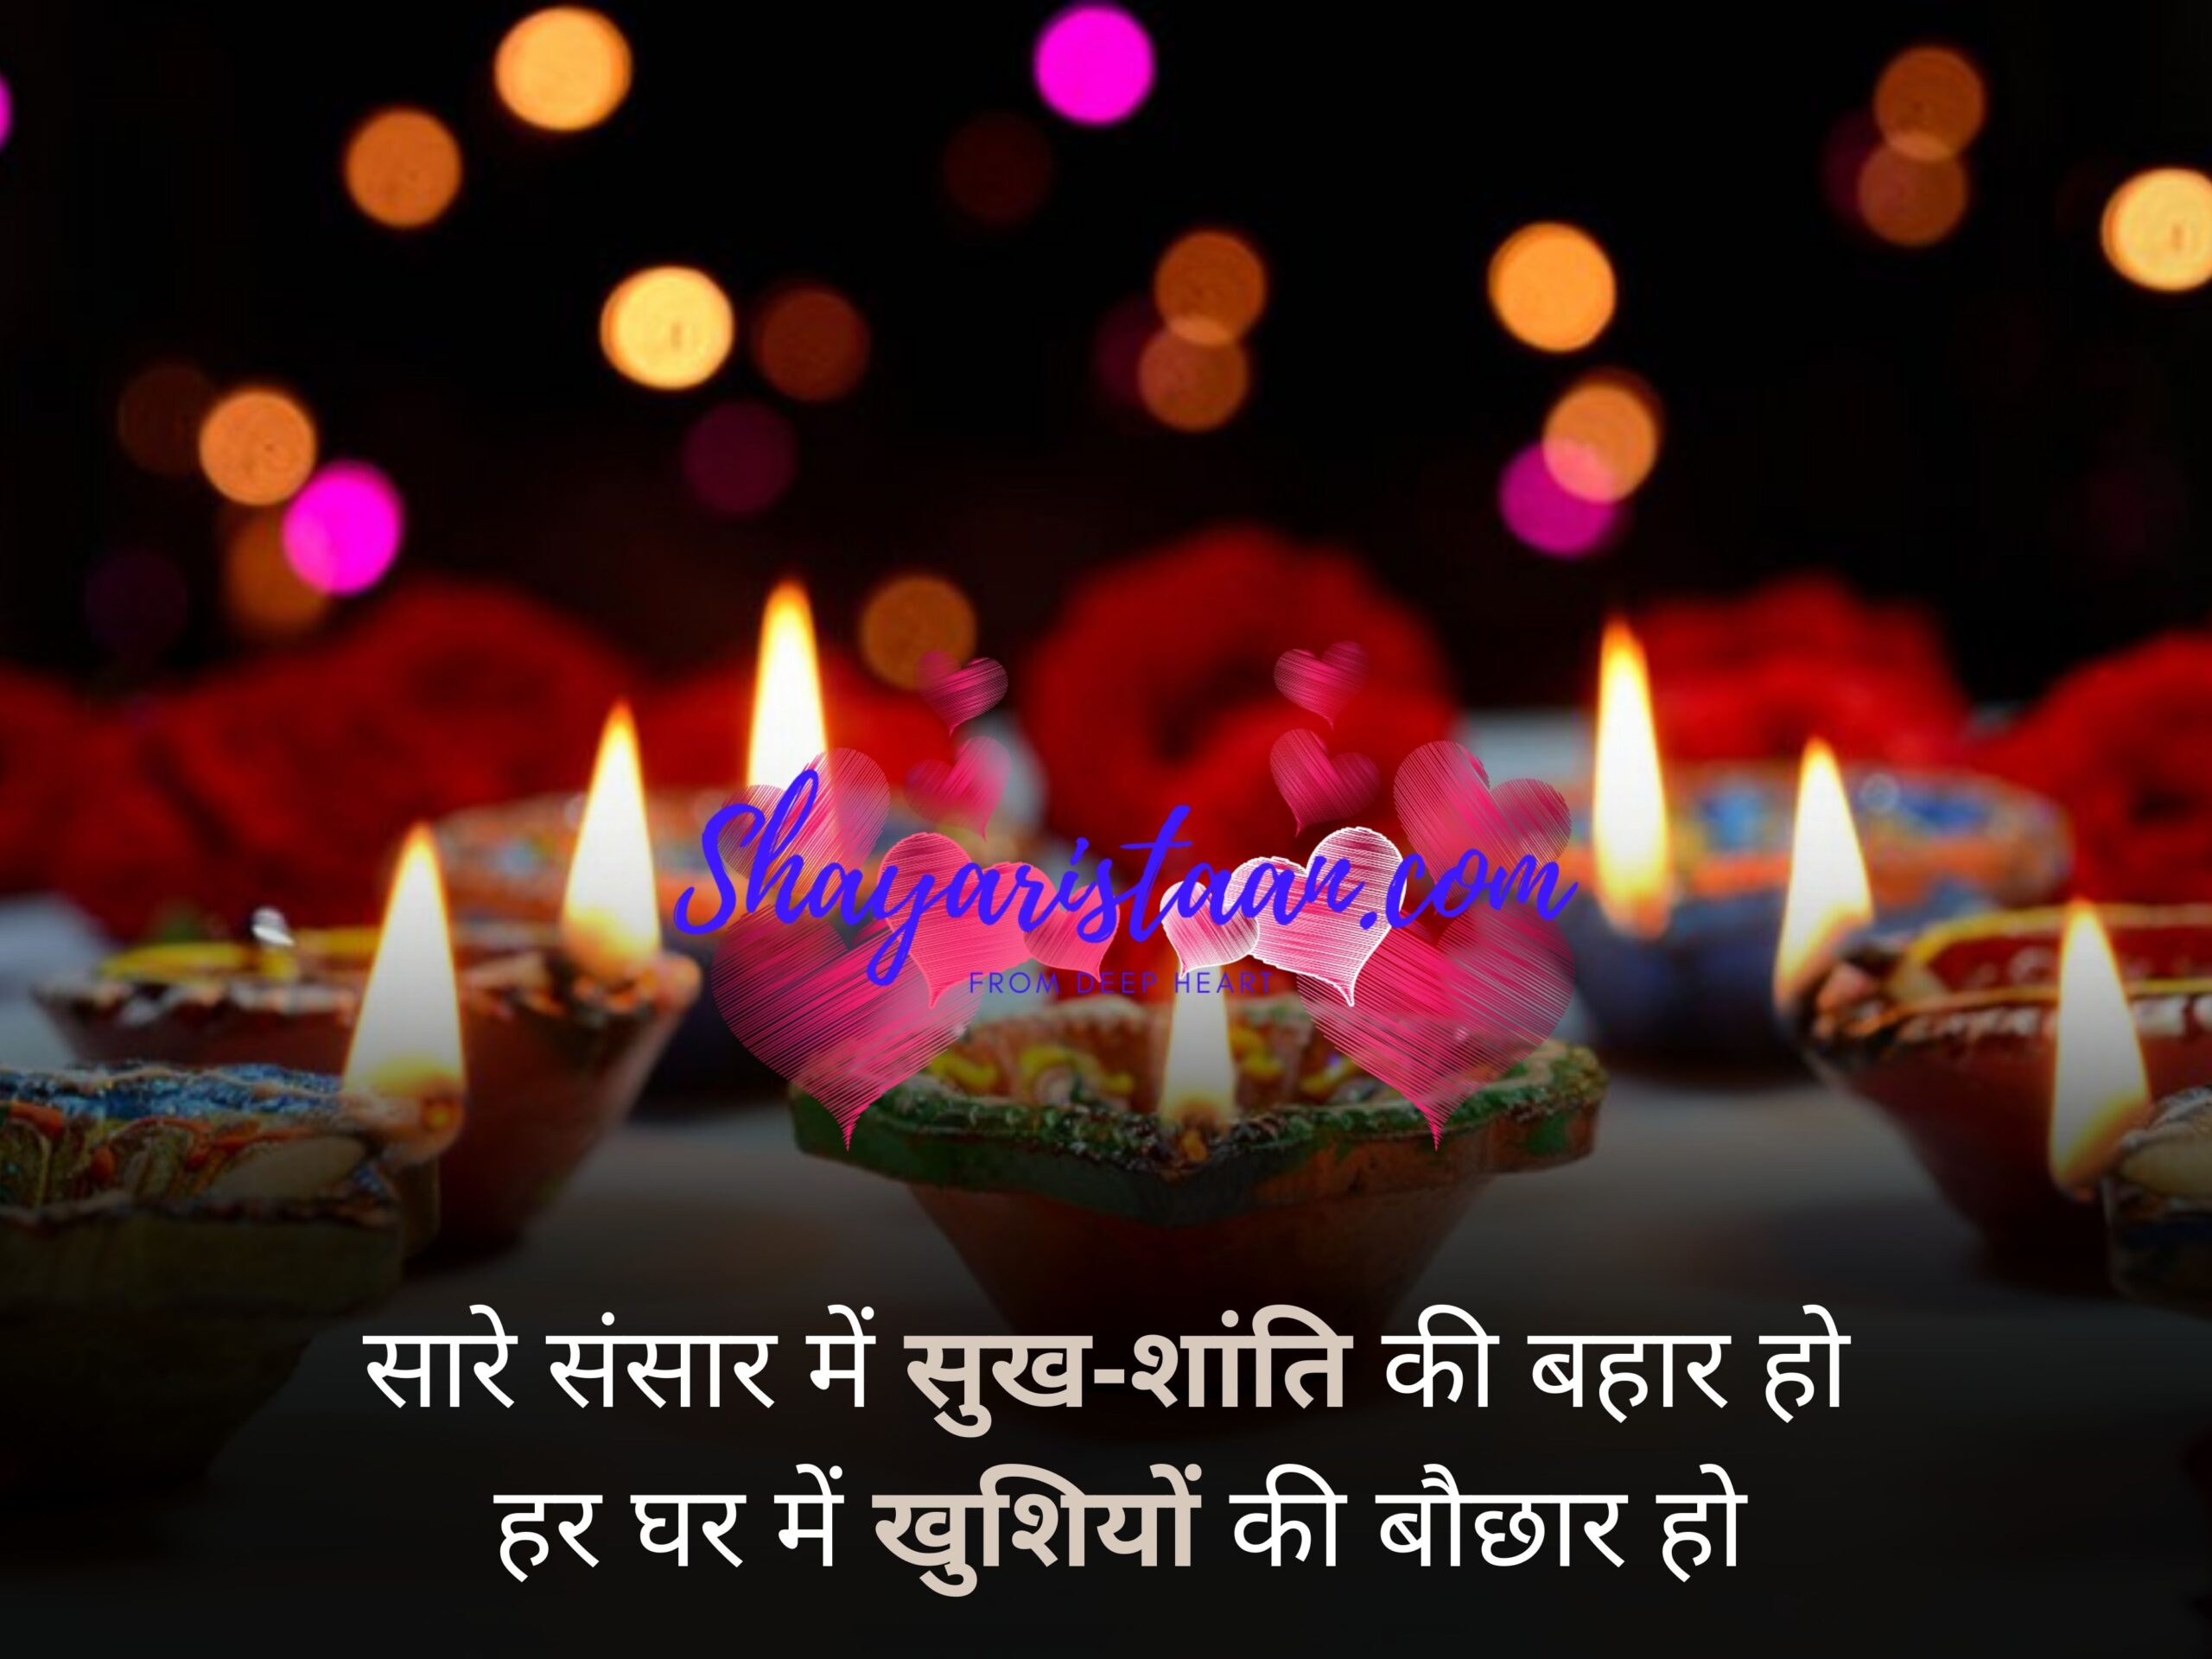 happy diwali wishes in hindi  | सारे संसार में सुख-शांति की बहार हो,  हर घर में खुशियों की बौछार हो |